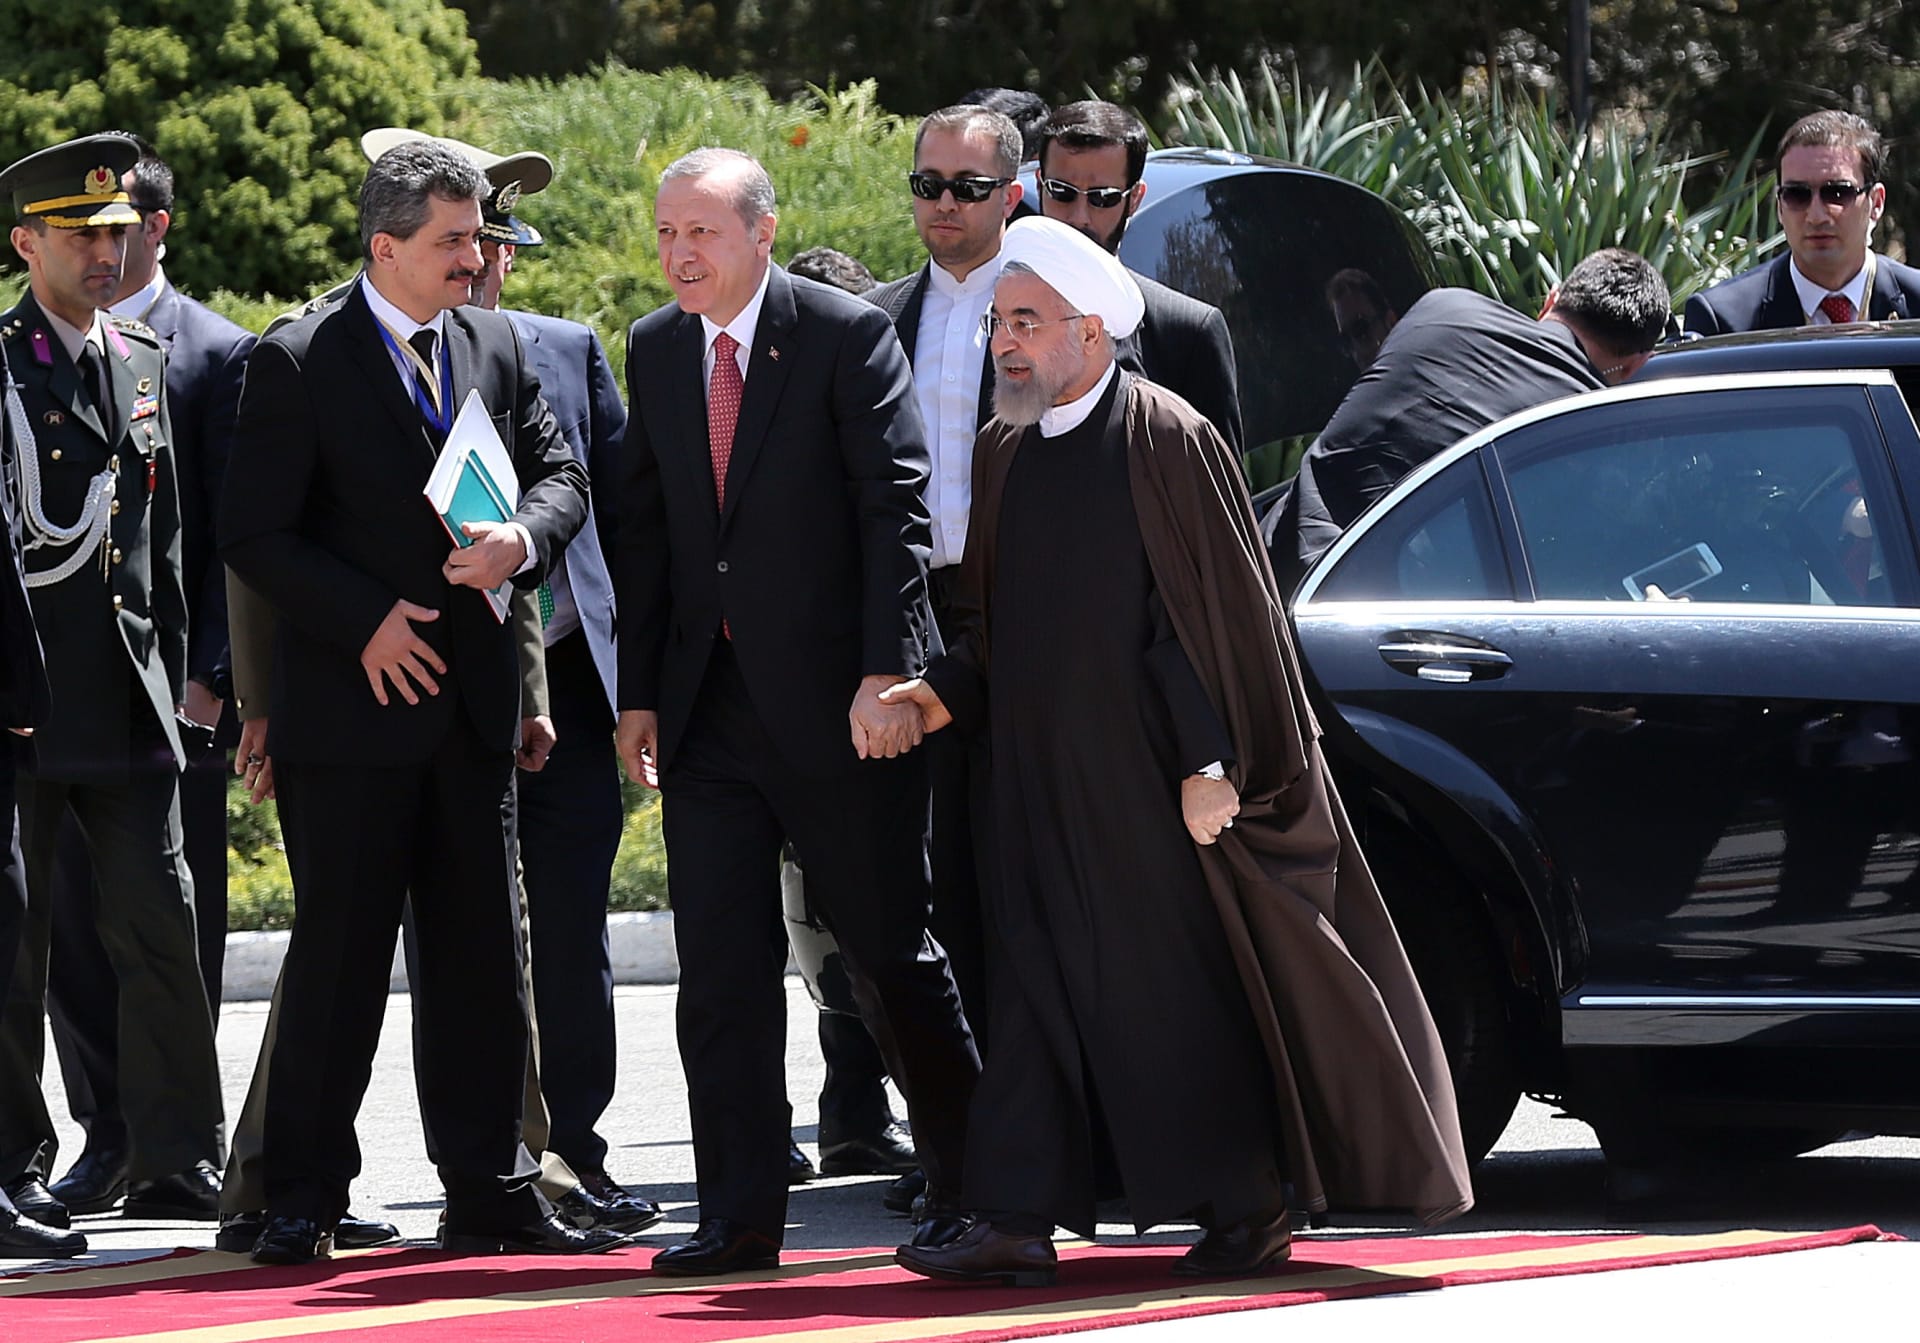 صورة أرشيفية لزيارة أجراها الرئيس التركي إلى إيران واستقباله من قبل روحاني